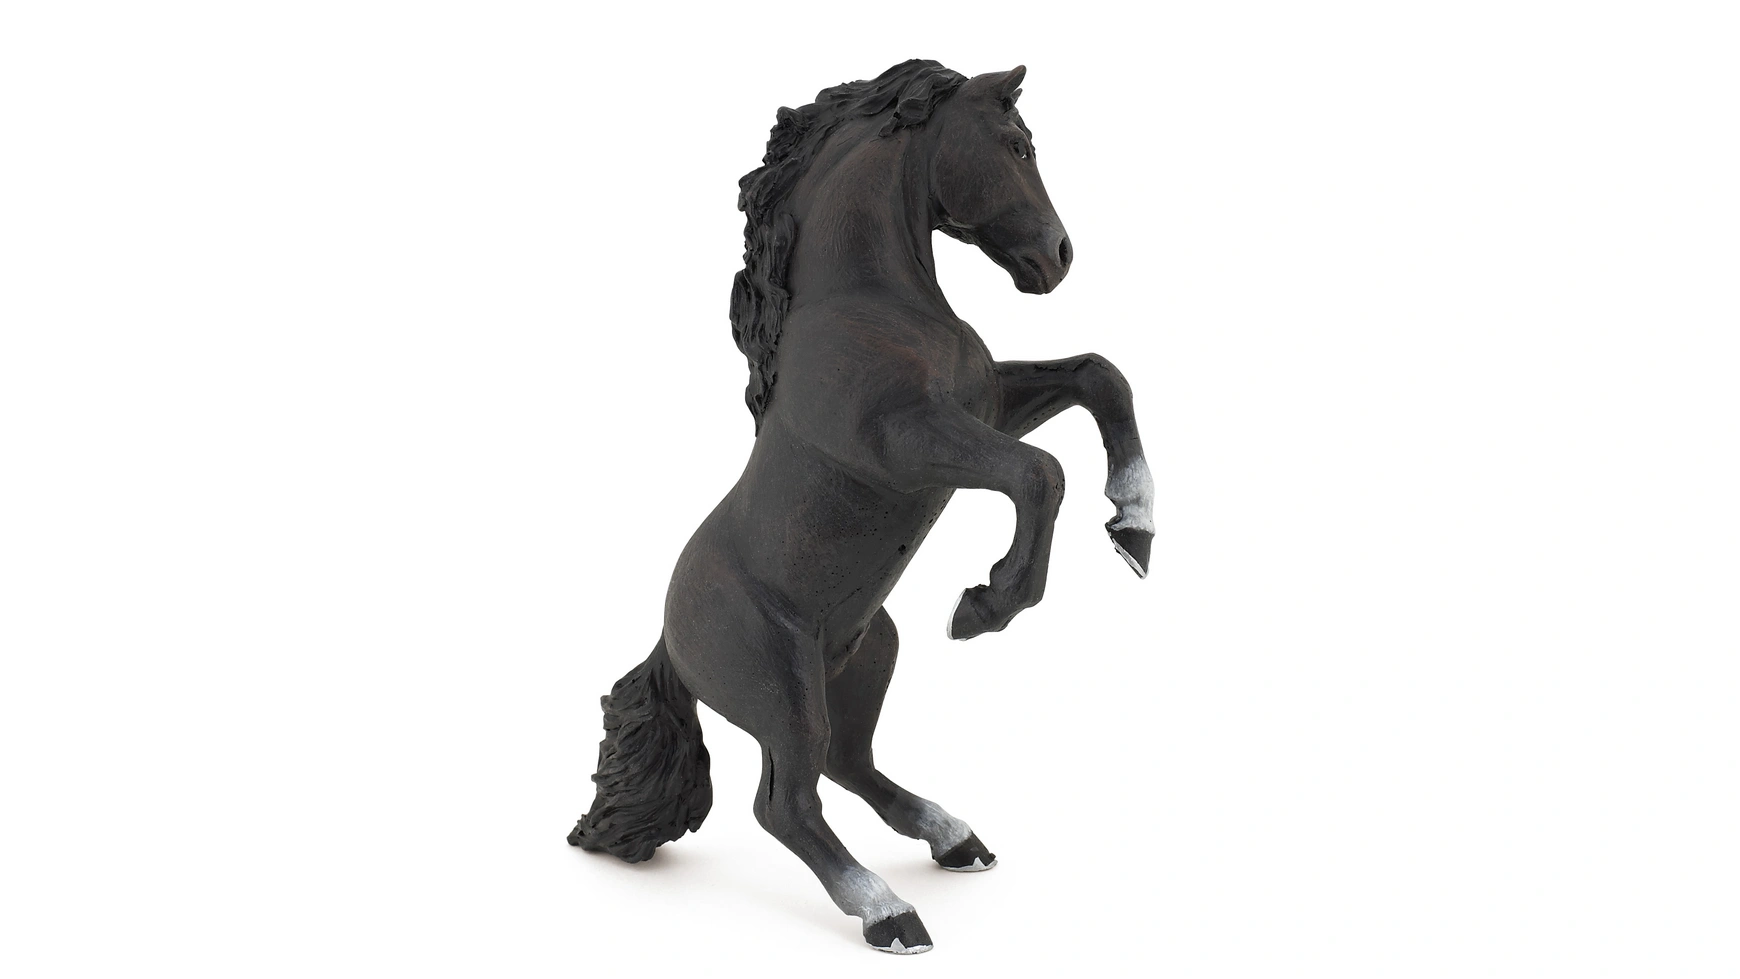 papo коллекционная фигурка серия рыцари турнирная лошадь 39945 Восходящая черная лошадь Papo